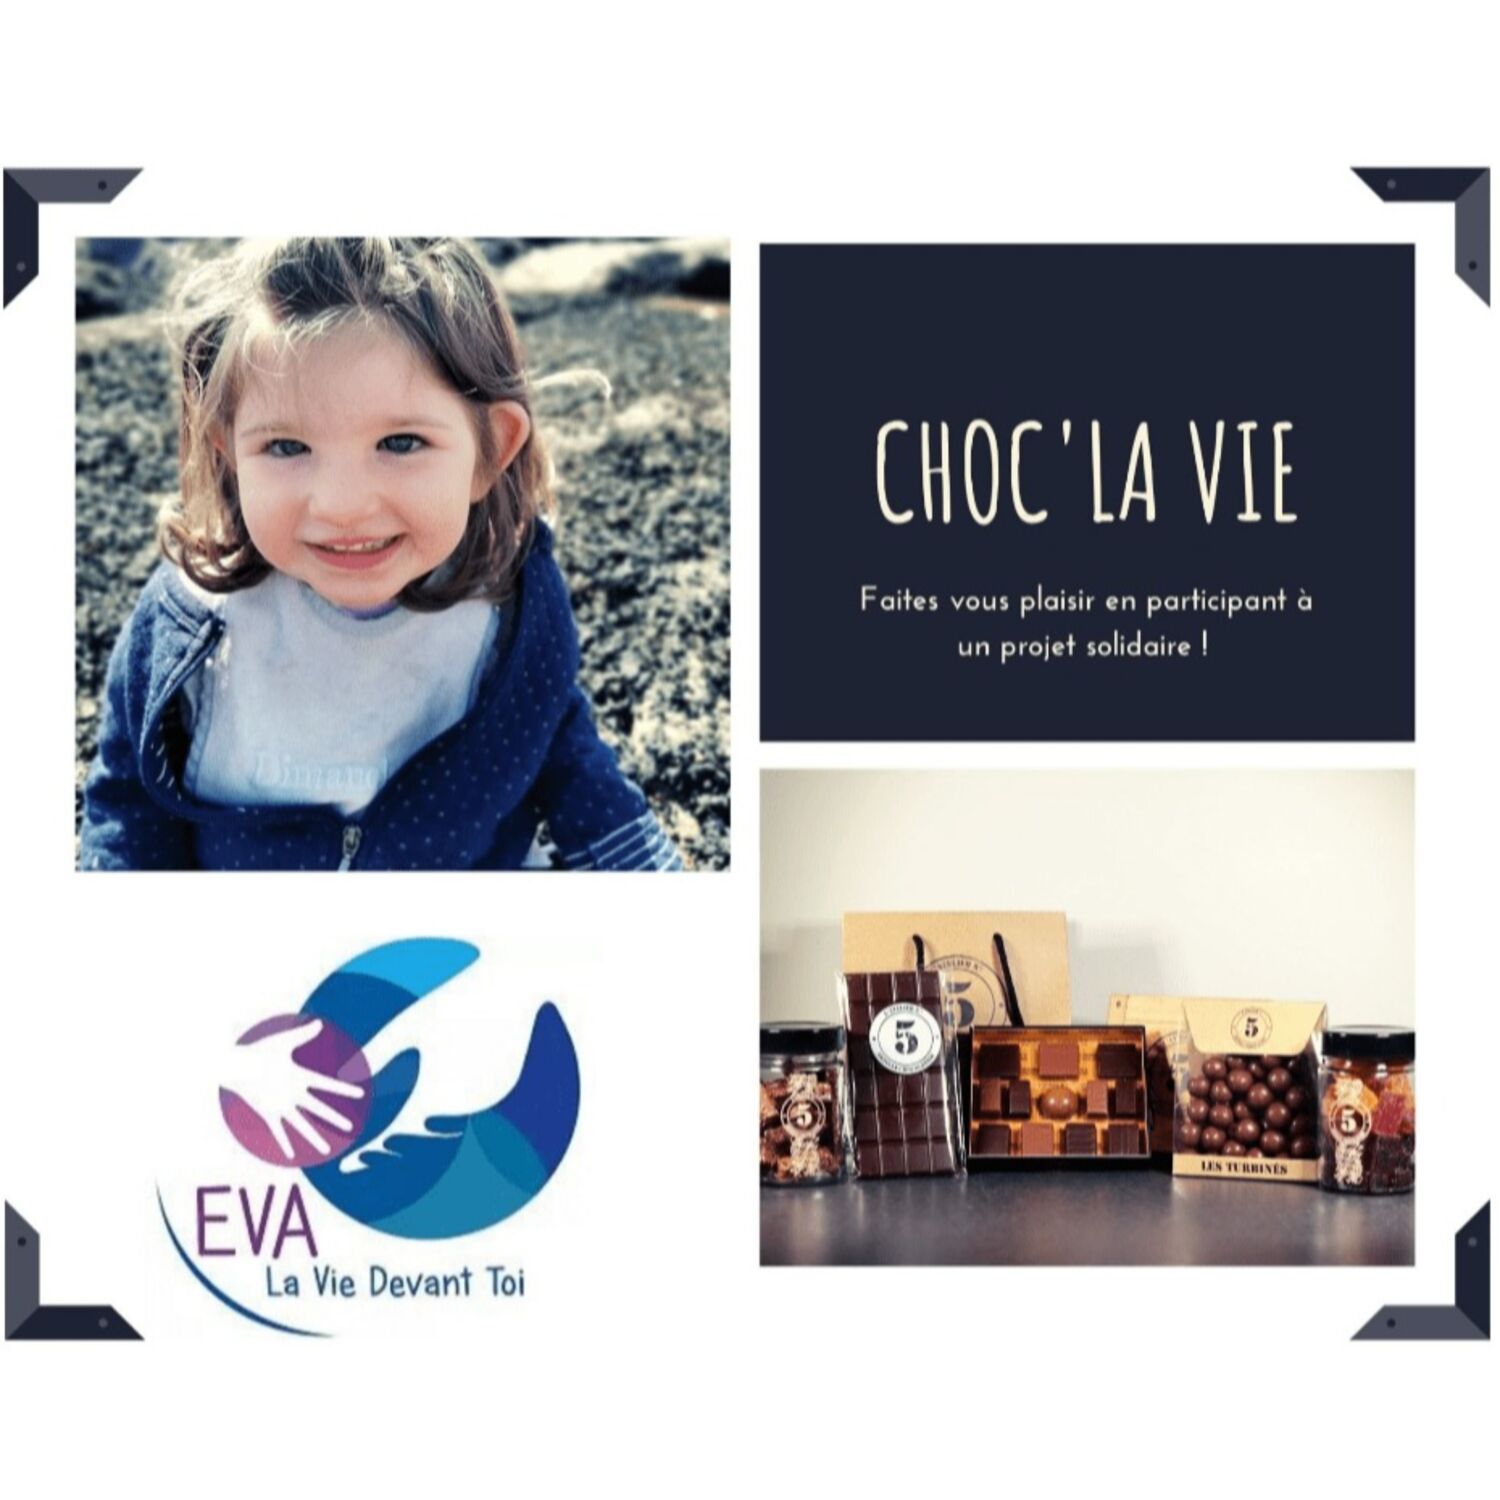 Choc La Vie : une vente de chocolat pour aider Eva atteinte d'une maladie génétique très rare